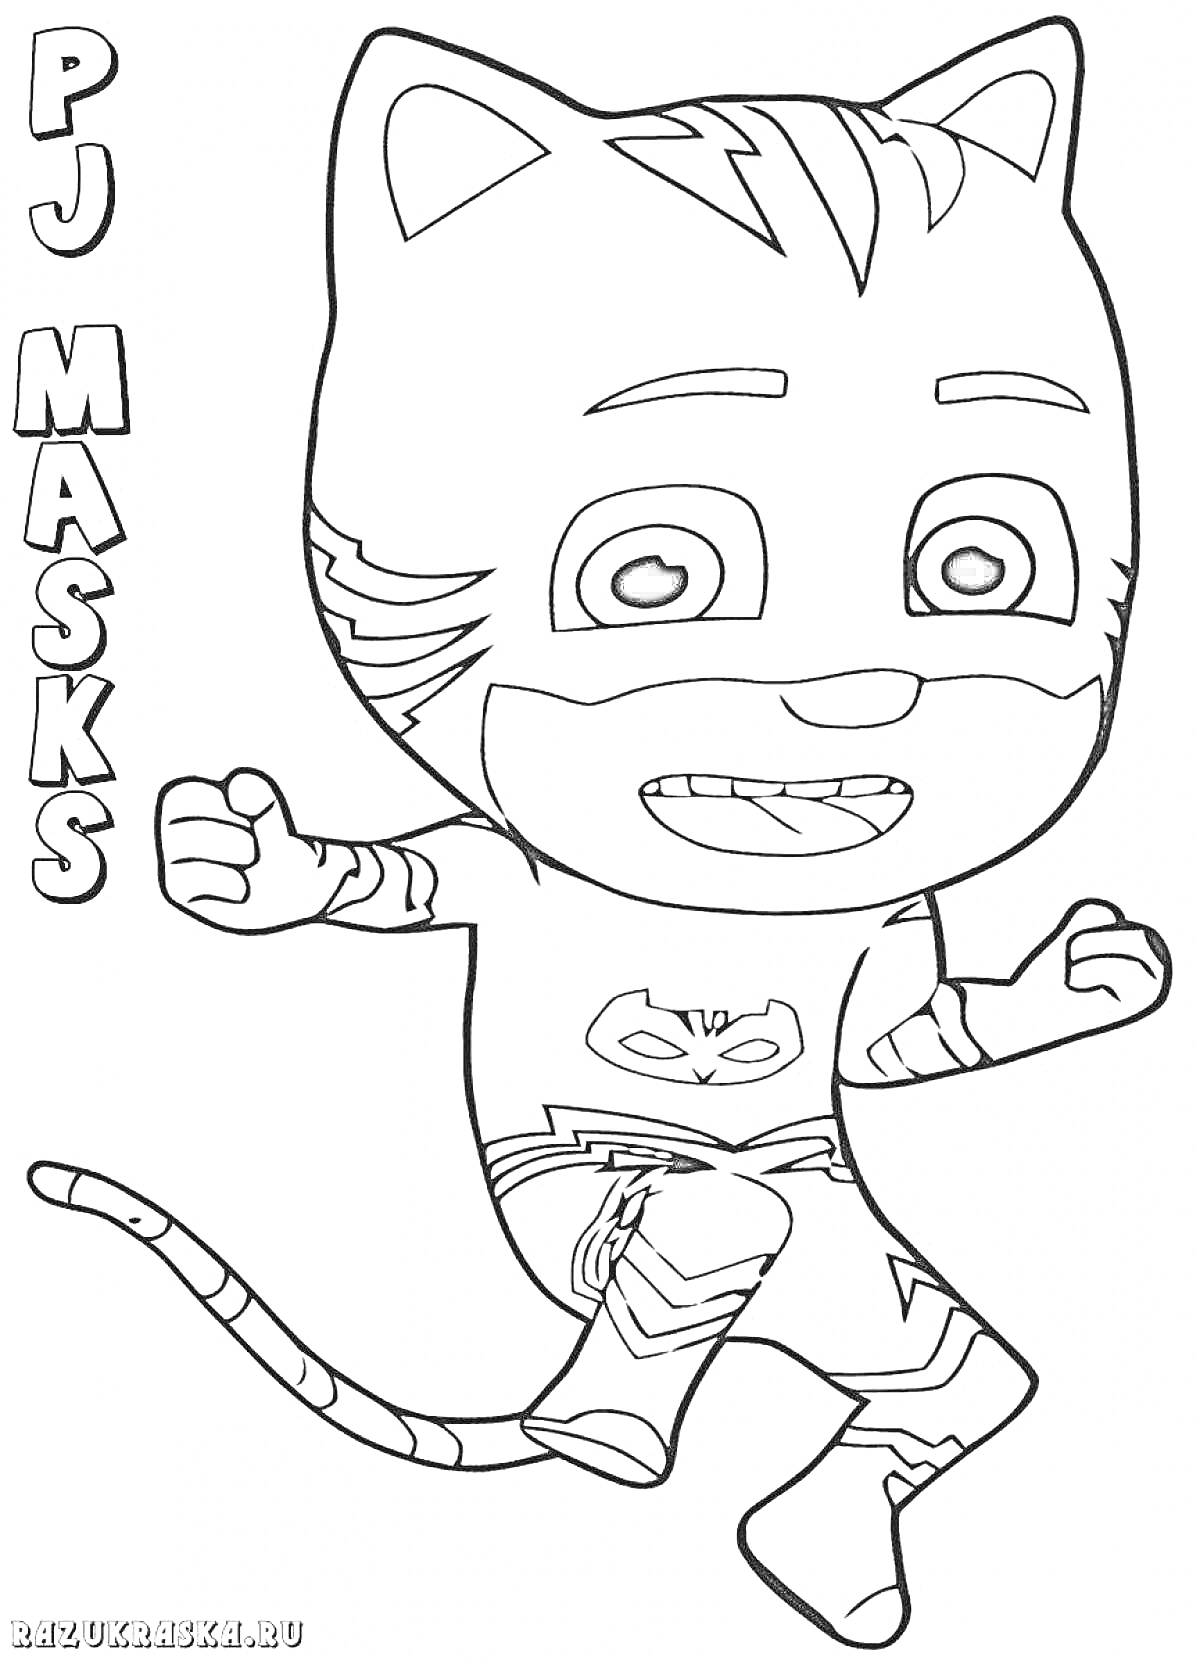 Раскраска Герой-мальчик с маской кота из PJ Masks